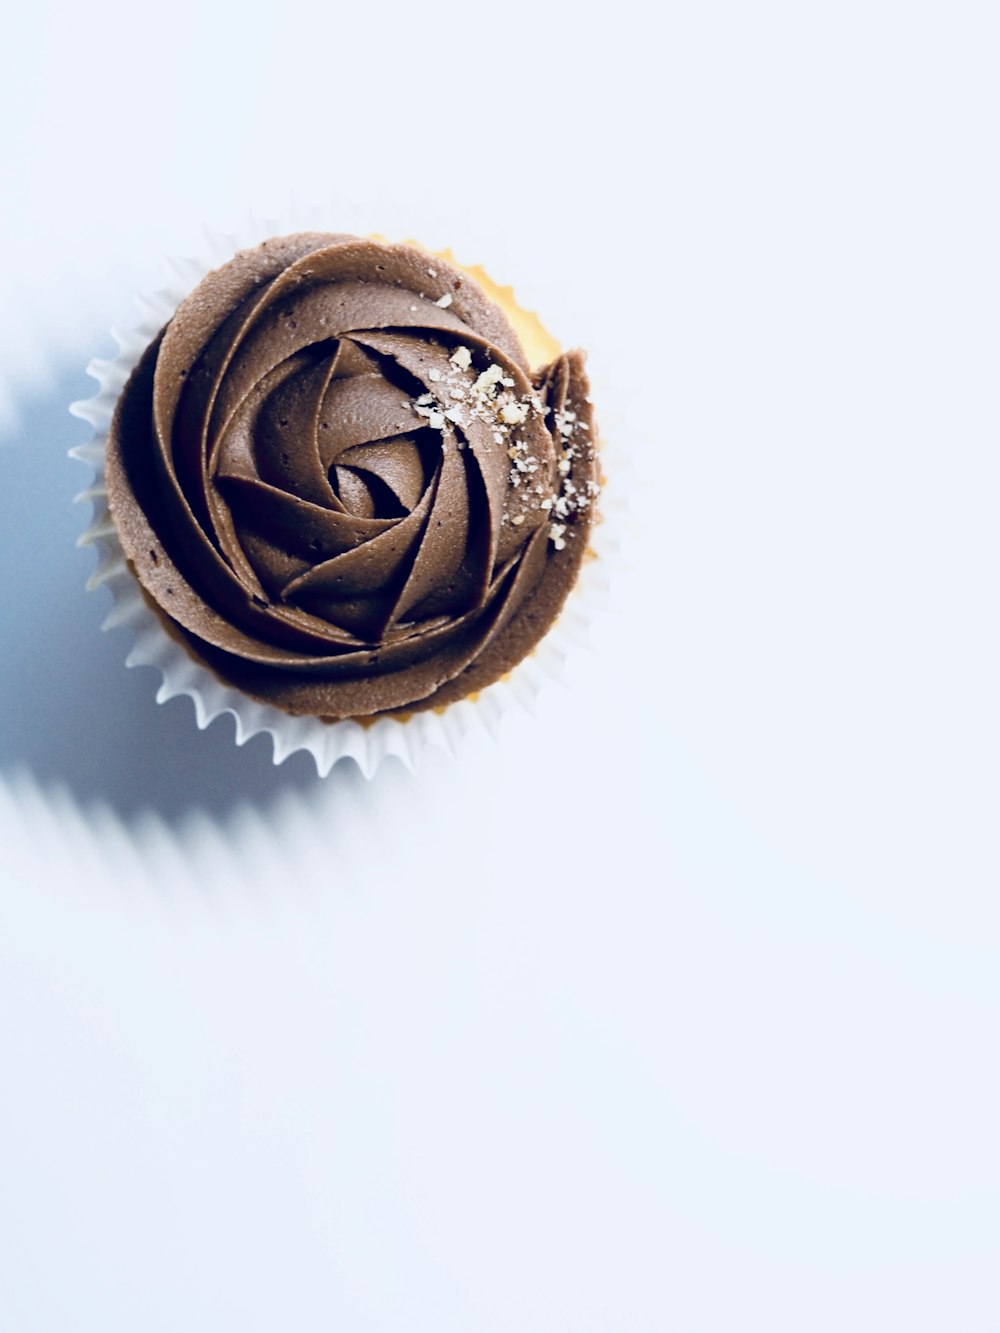 Schokoladen-Cupcake auf weißer Oberfläche